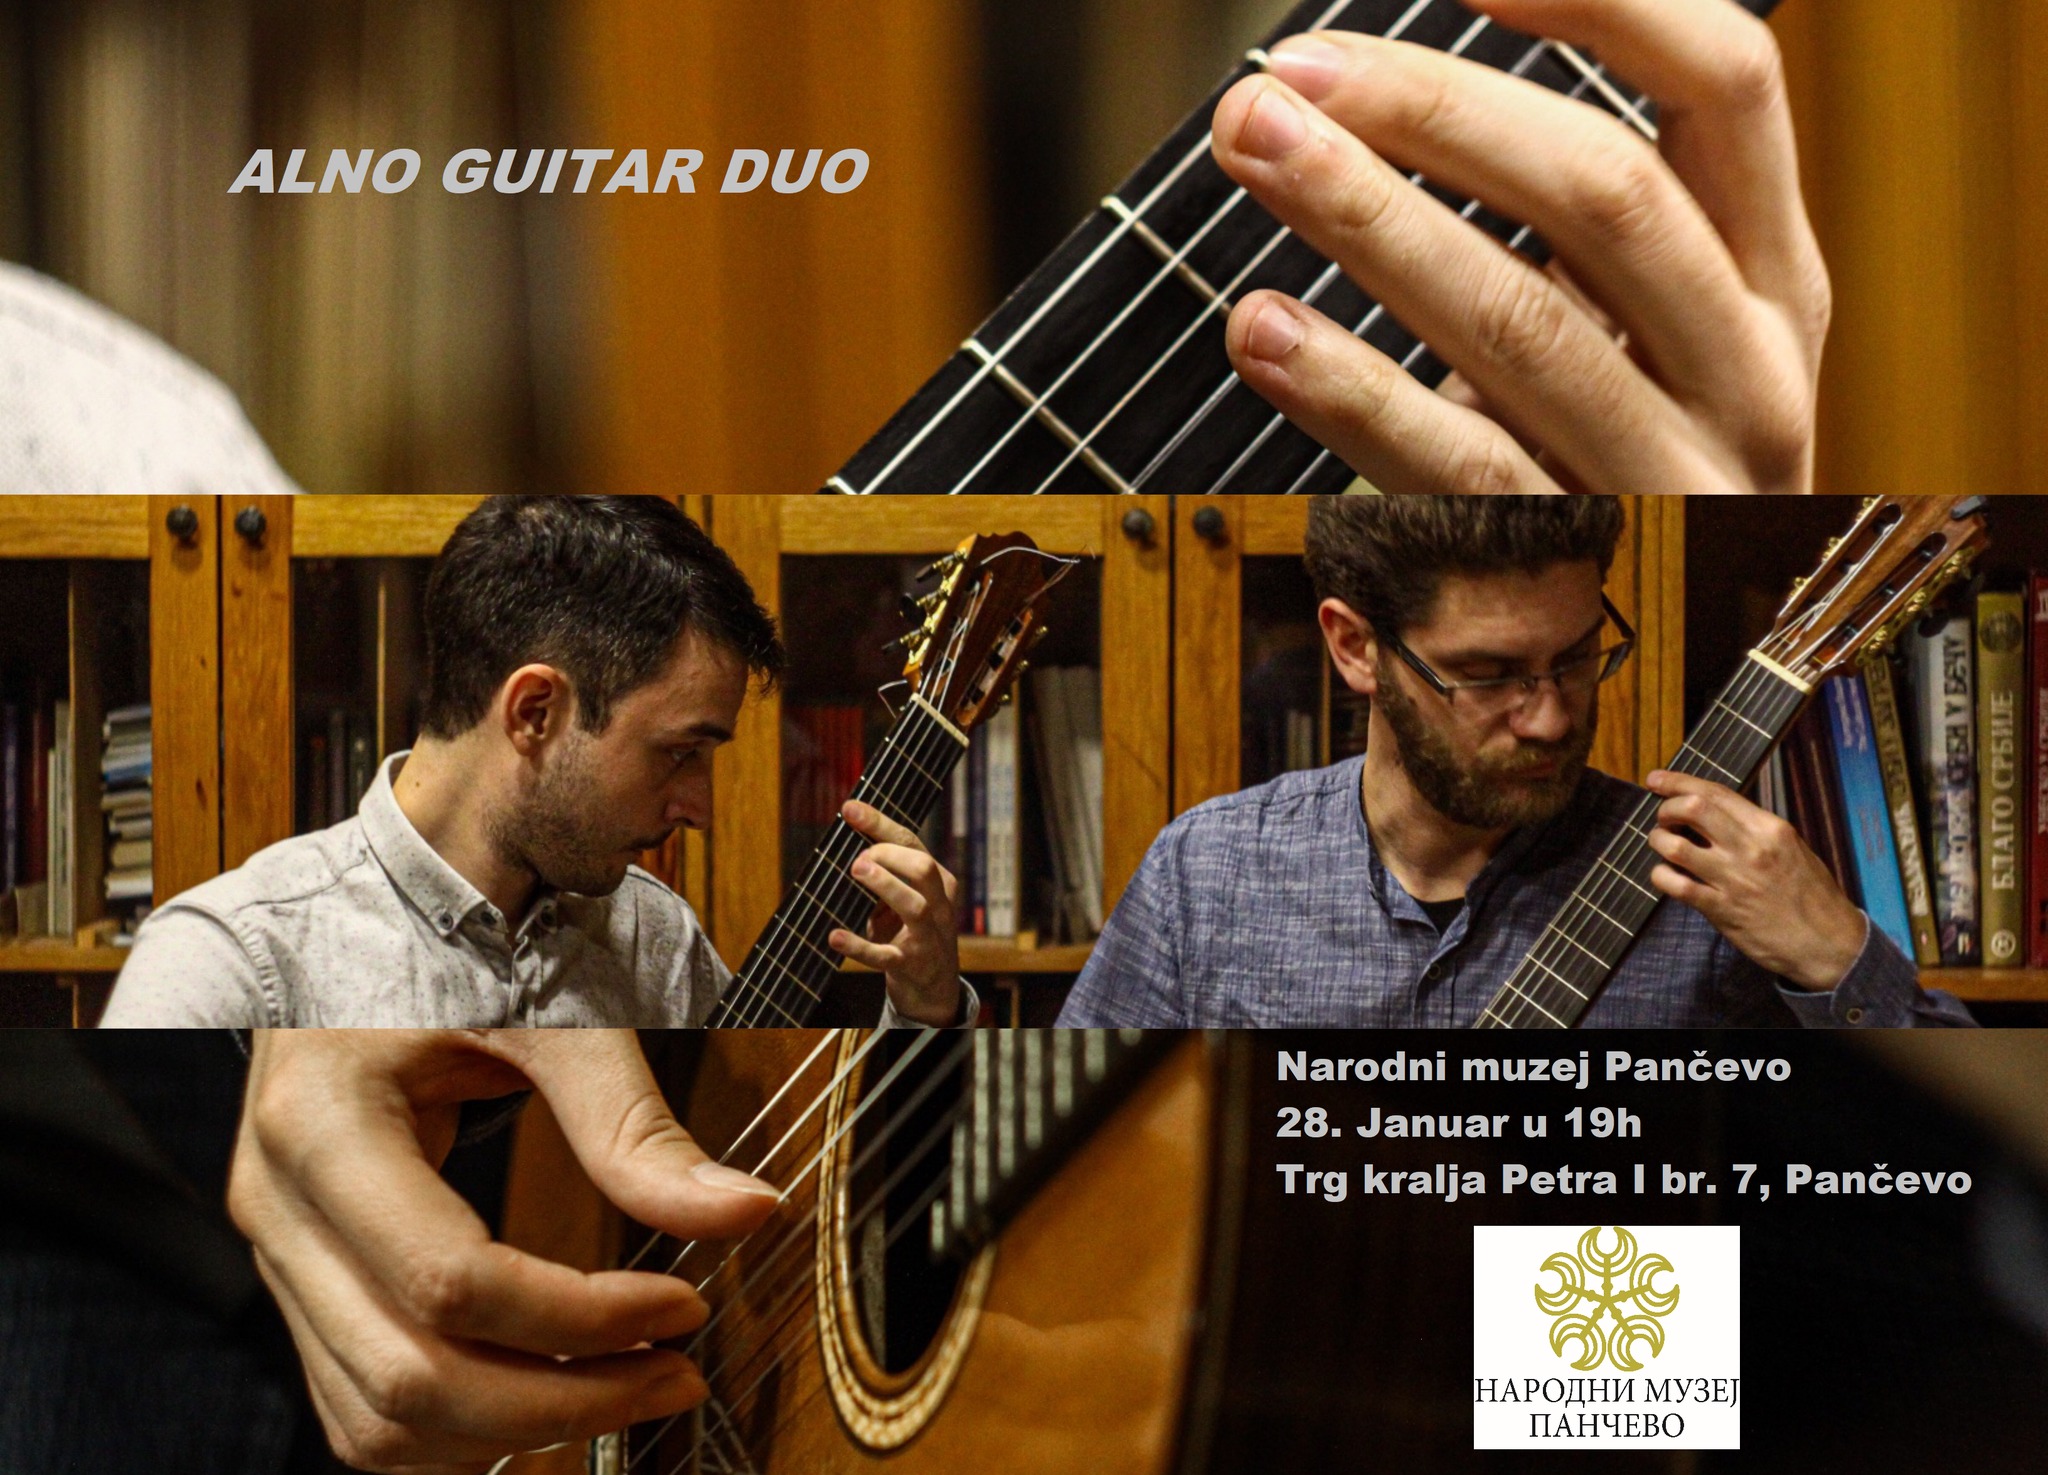 Koncert gitarkog dua "Alno" 28. januara u Narodnom muzeju